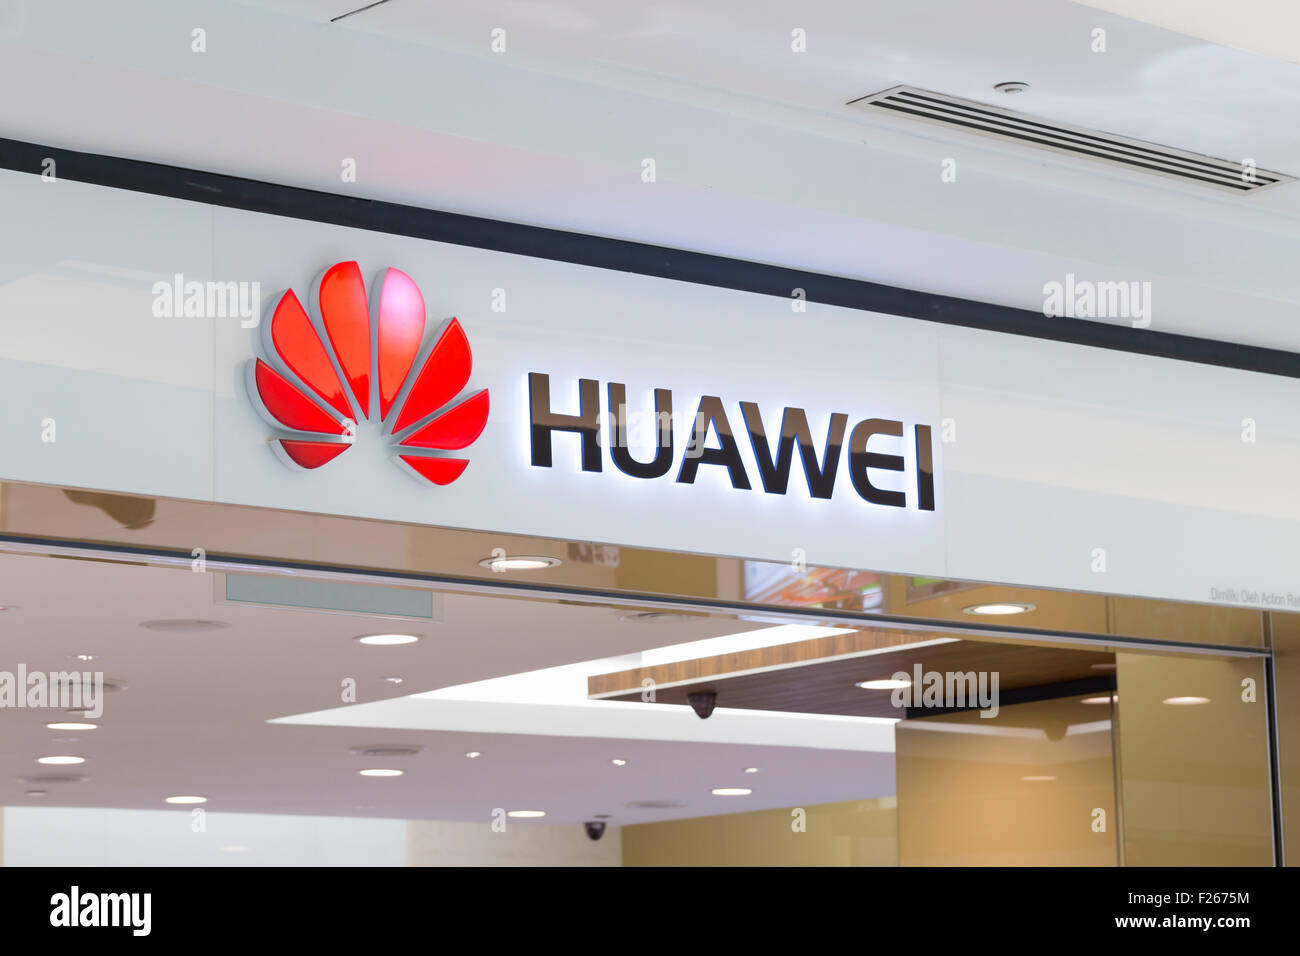 Huawei logo Stock Photo